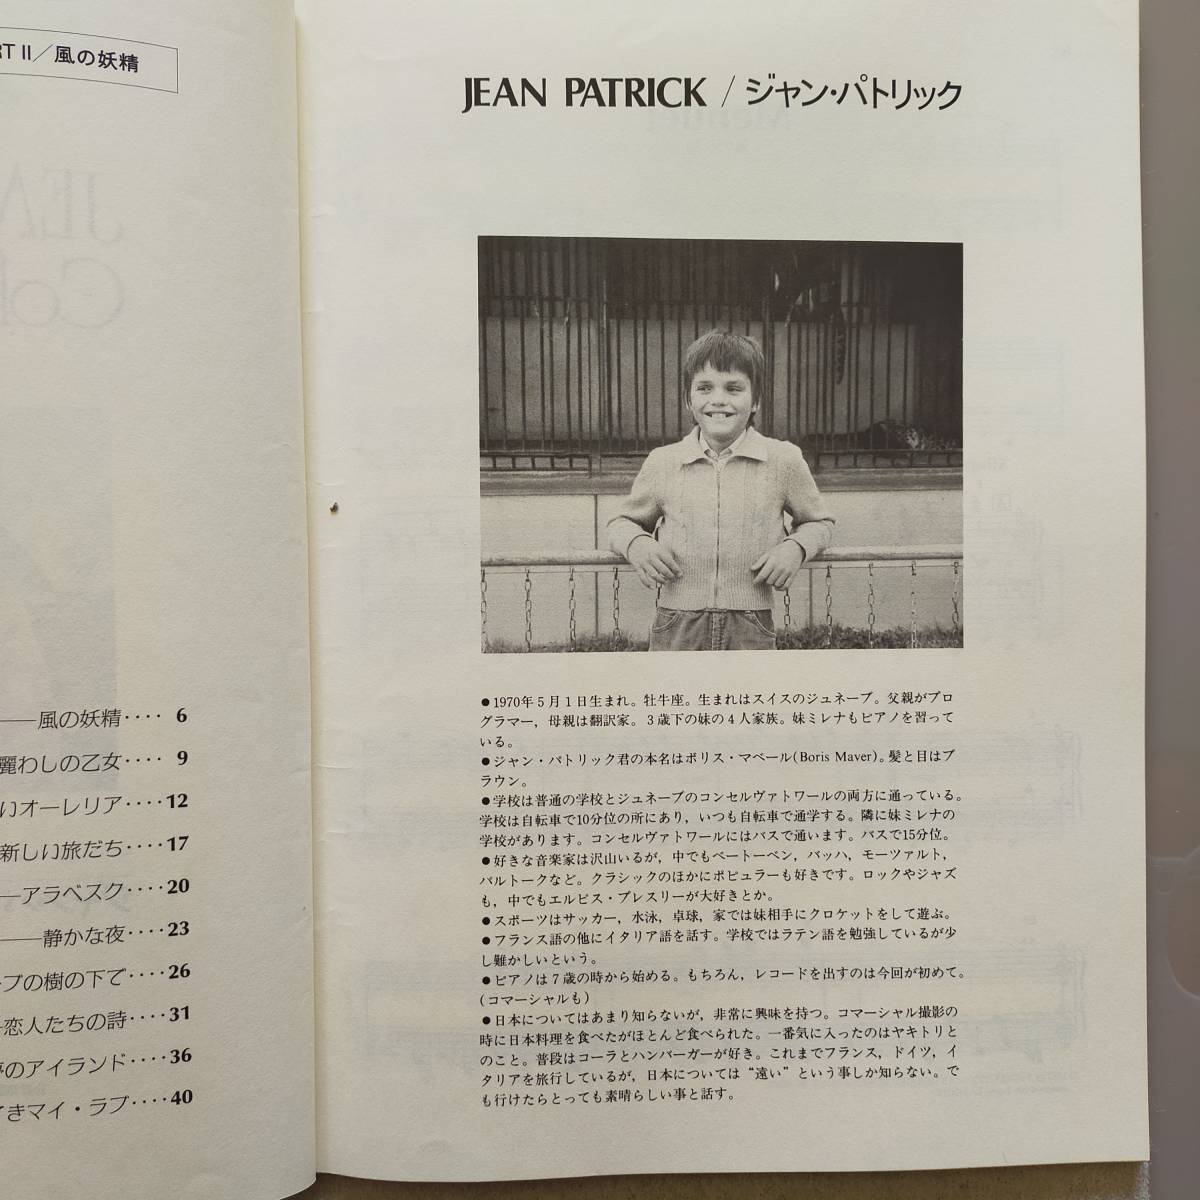 【送料無料/即決/希少】JEAN PATRICK Collection Part2 風の妖精 ジャン・パトリック・コレクション・パート2 ピアノ 楽譜 (M-0050-0761)